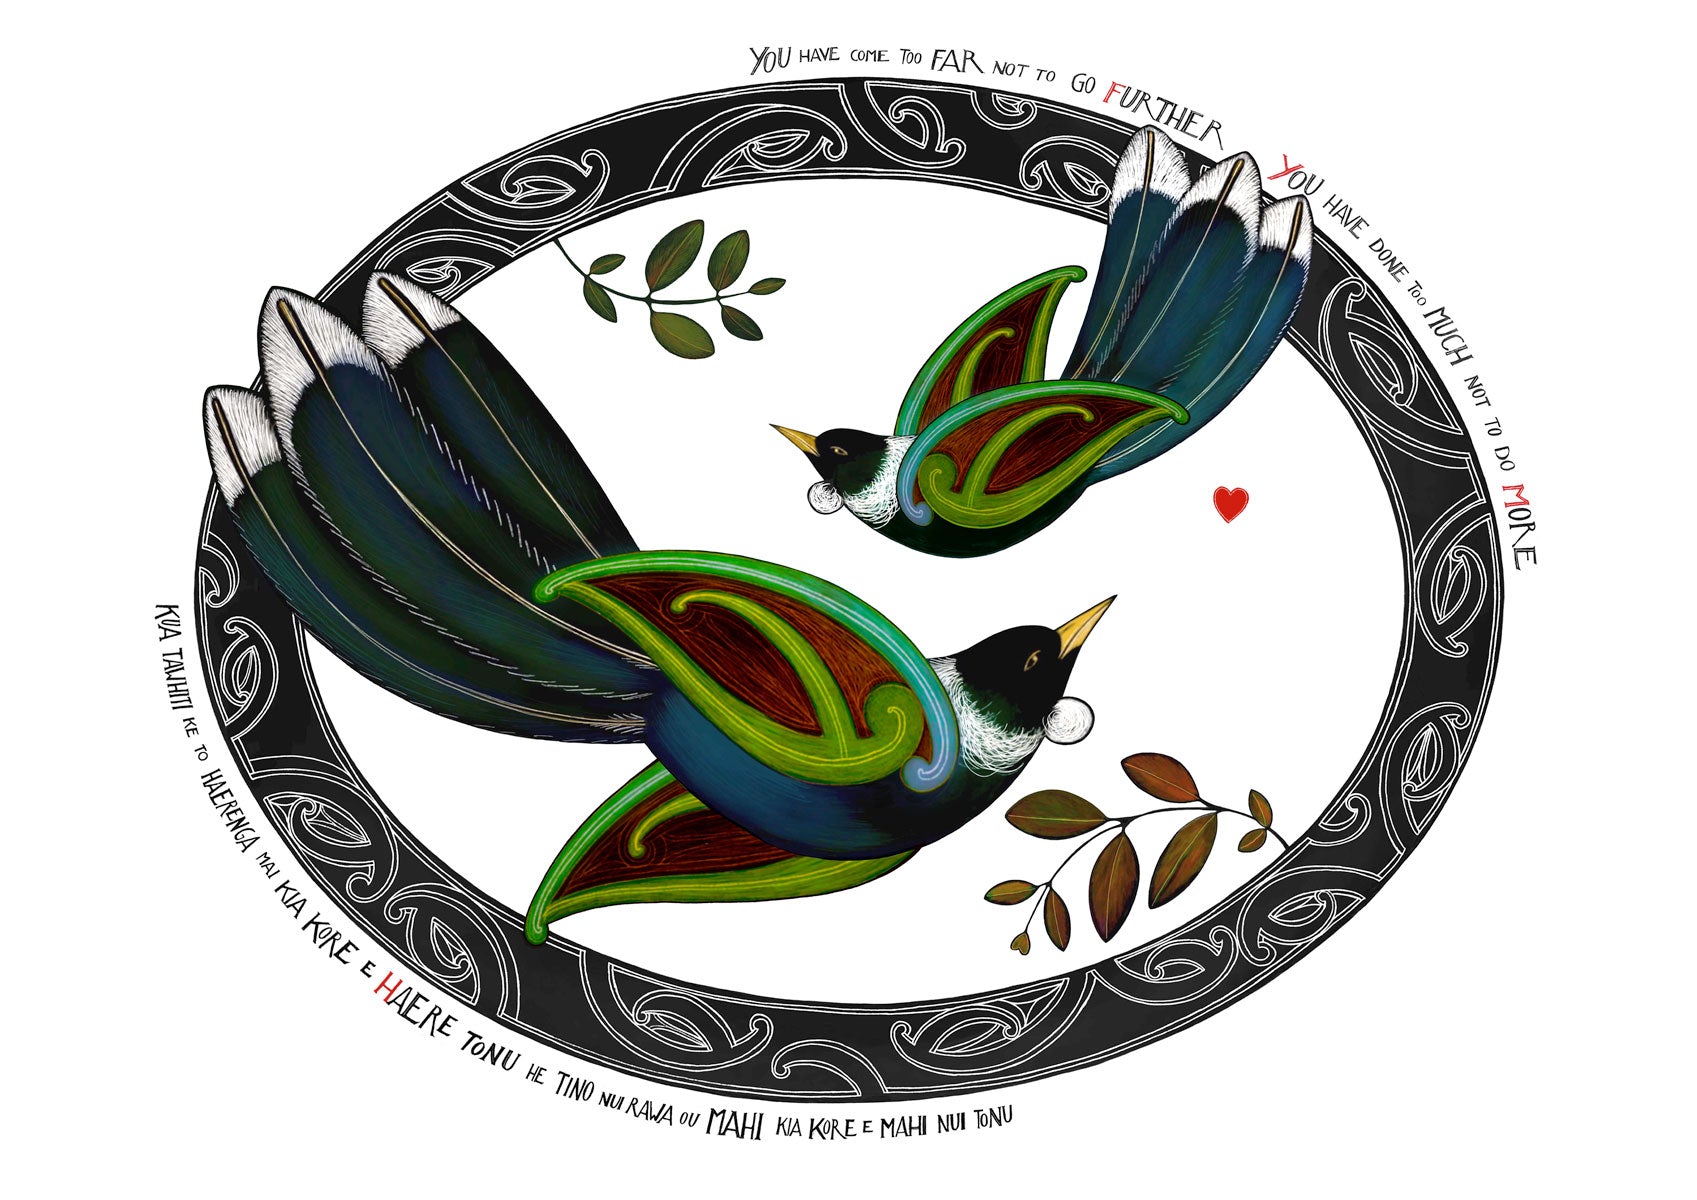 Kia kaha Tui nz art print with maori art tui birds flying in a koru oval with an aroha love heart. Maori proverb in te reo maori and english Amber Smith New Zealand Aotearoa.